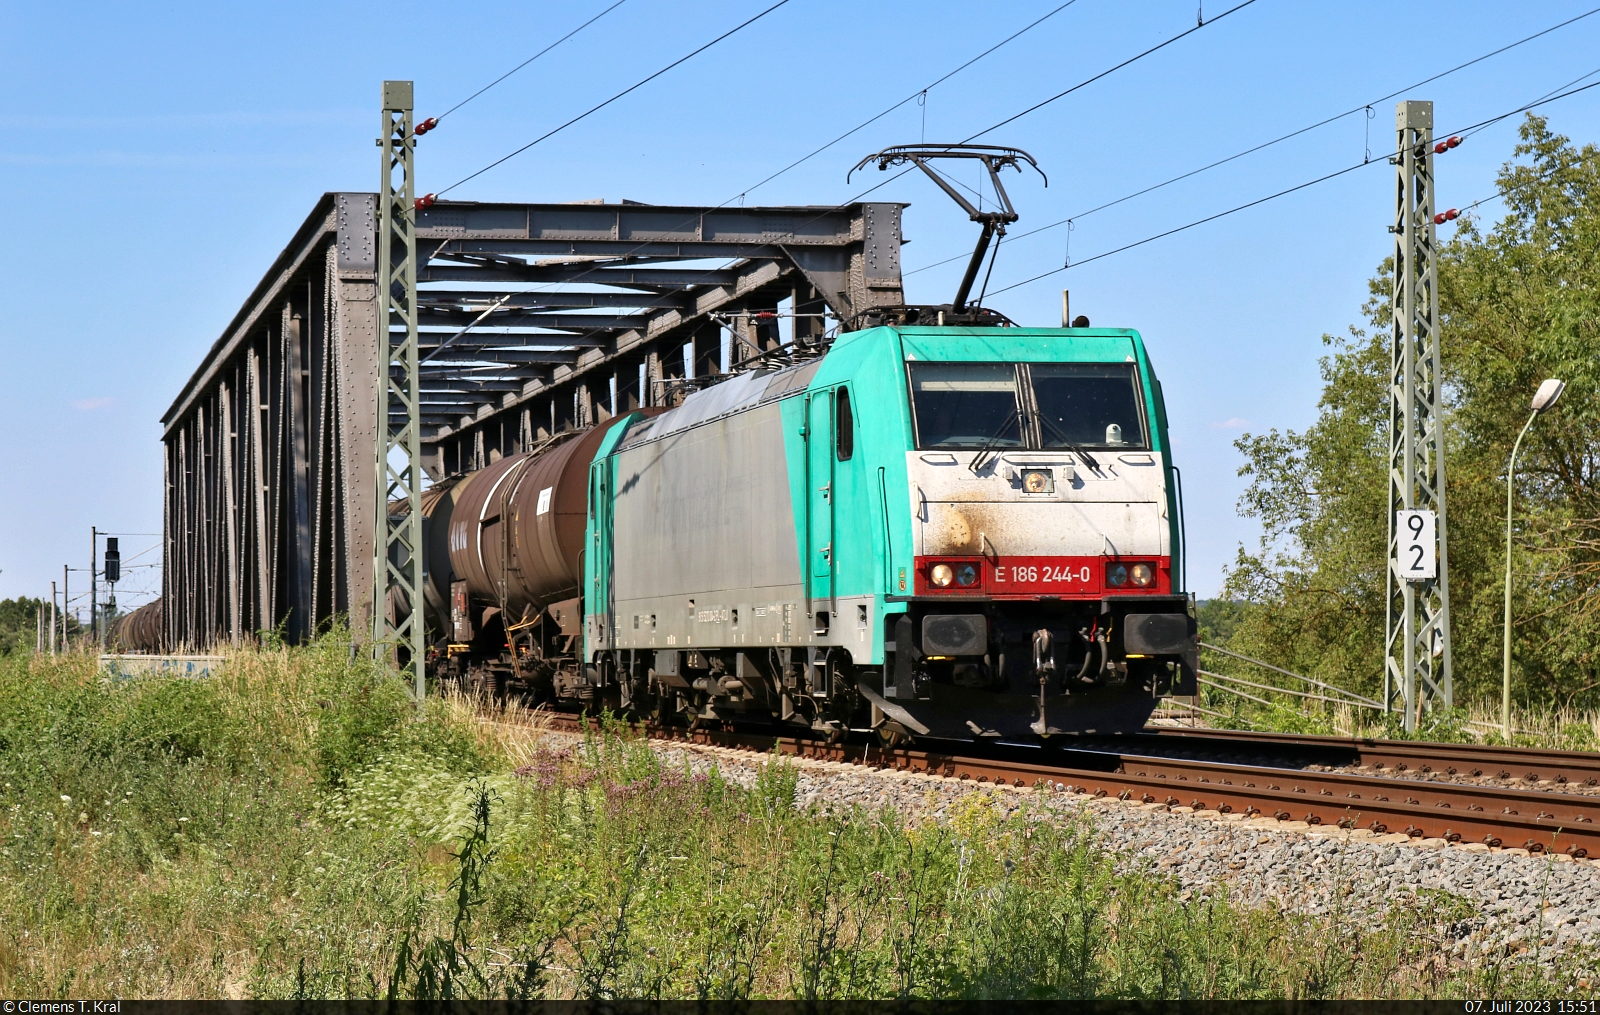 Kesselzug mit 186 244-0 (91 51 5270 004-2 PL-ATLU) überquert die Saale in Schkopau Richtung Merseburg Hbf.

🧰 Alpha Trains Luxembourg No.2 S.à r.l., vermietet an Transchem Sp. z o.o.
🕓 7.7.2023 | 15:51 Uhr